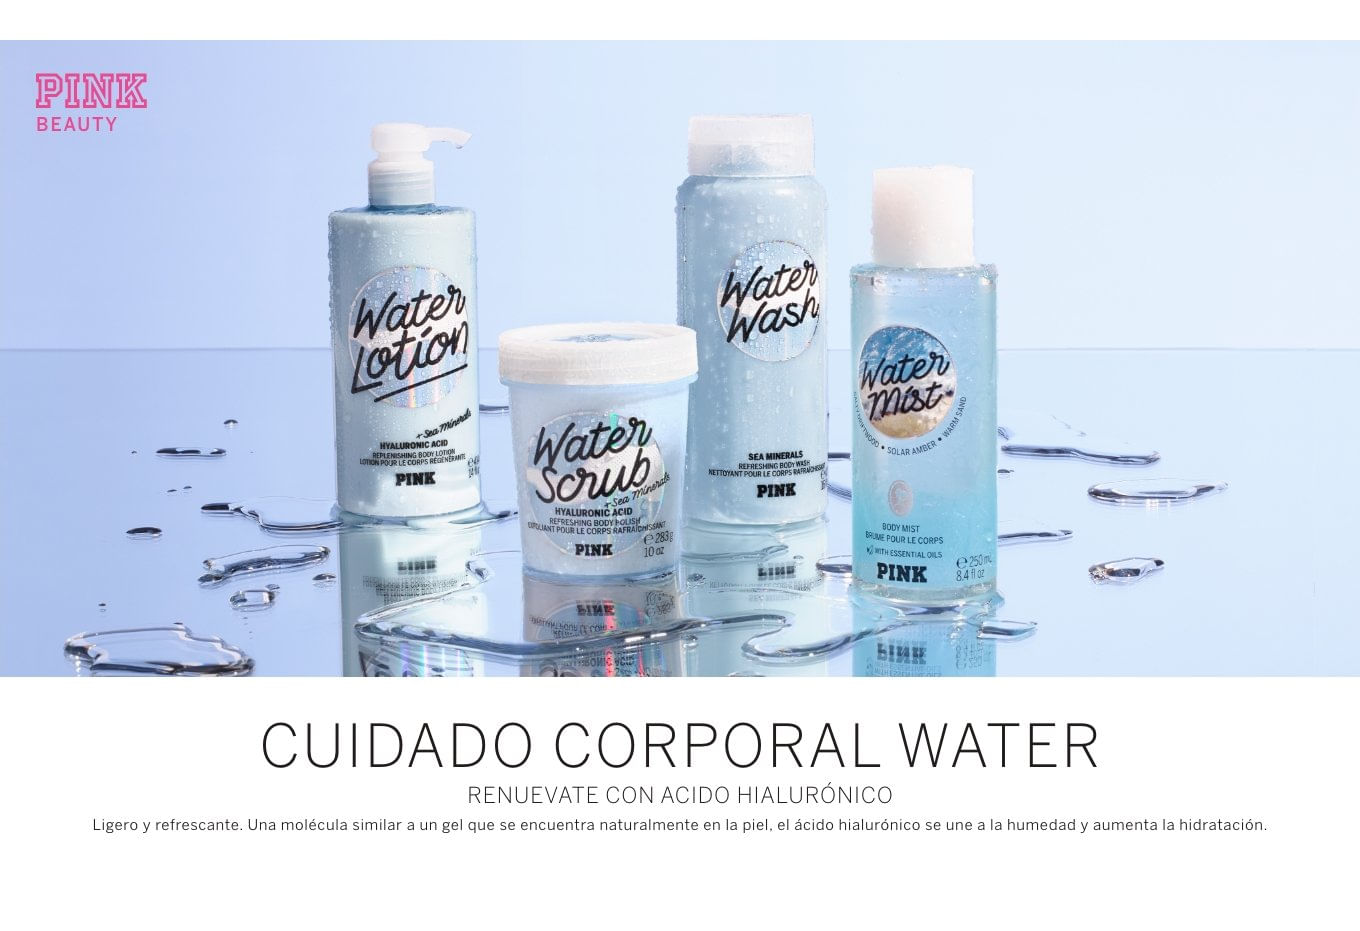 Ciudado Corporal Water